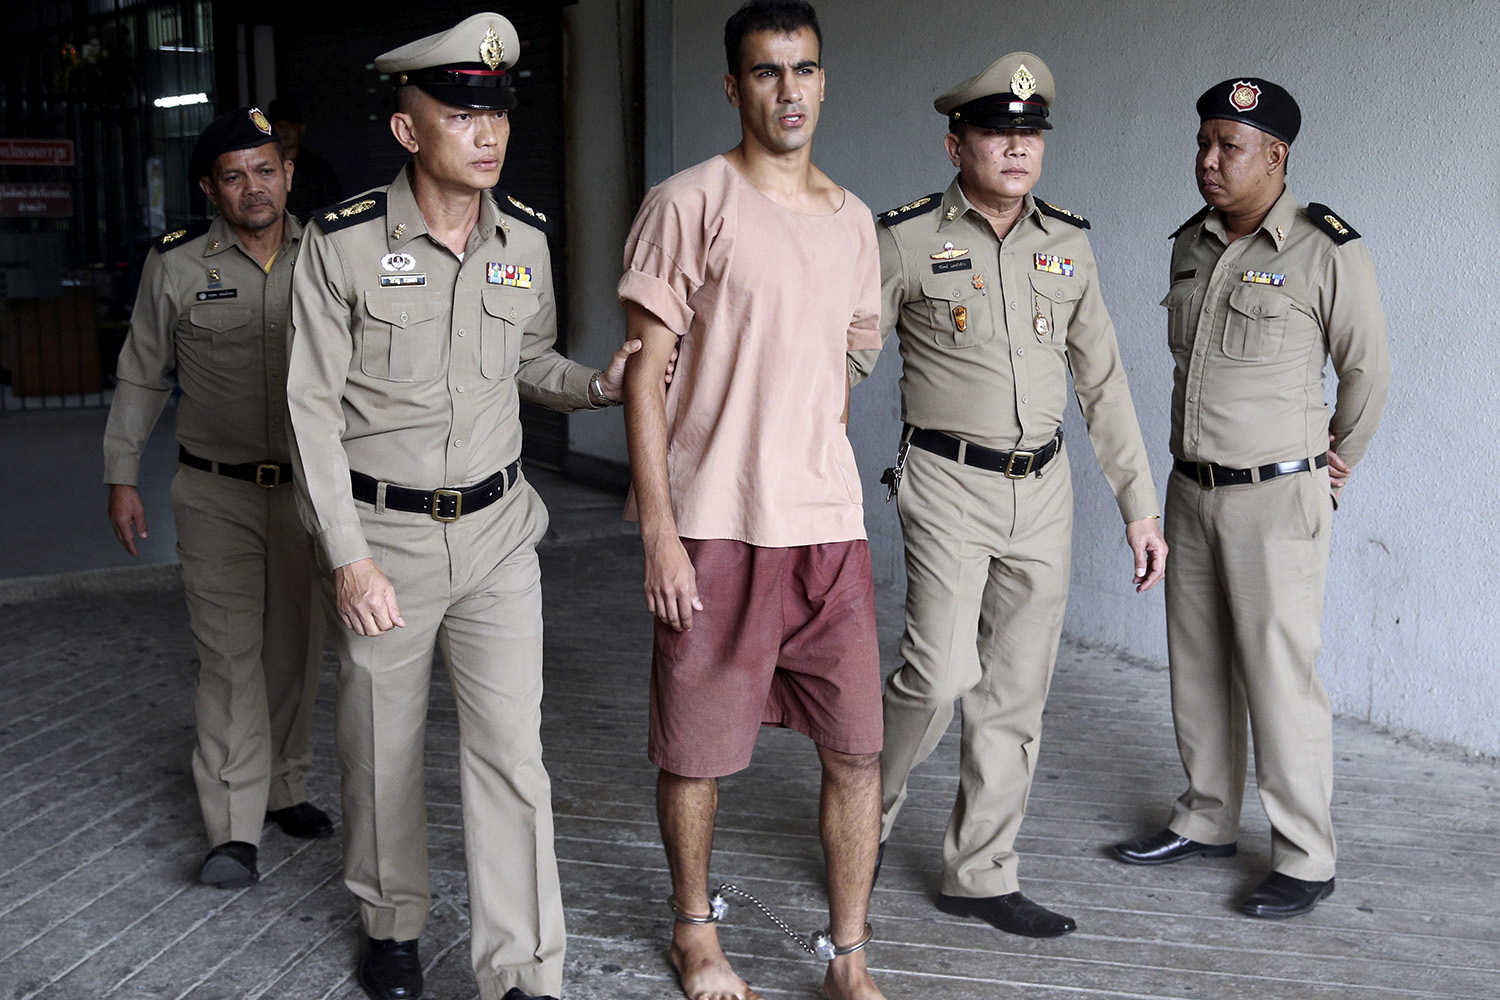 Tribunal tailandês ordena libertação de jogador refugiado do Bahrein